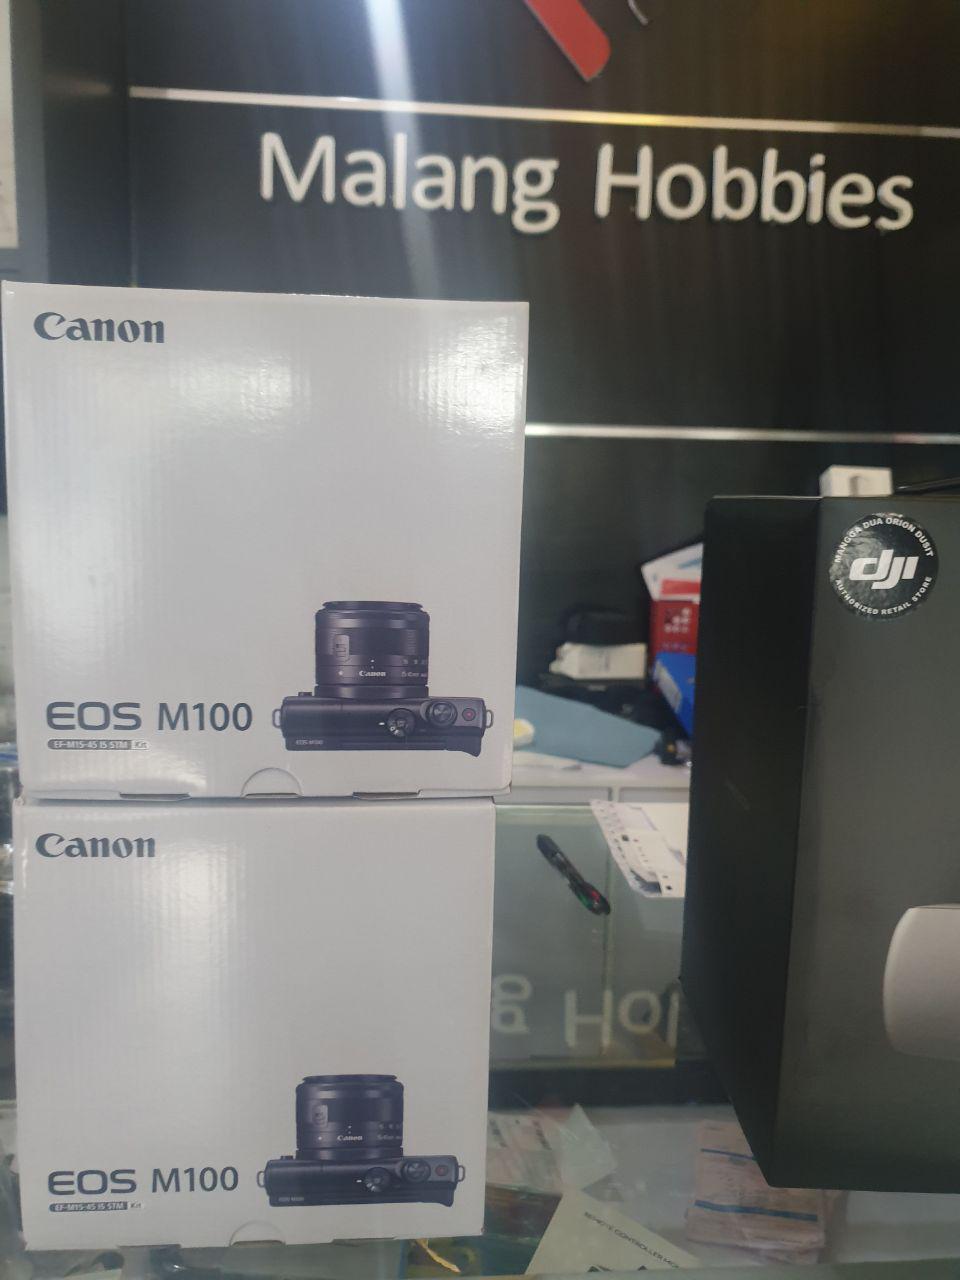 Jual kamera canon m100 murah malang